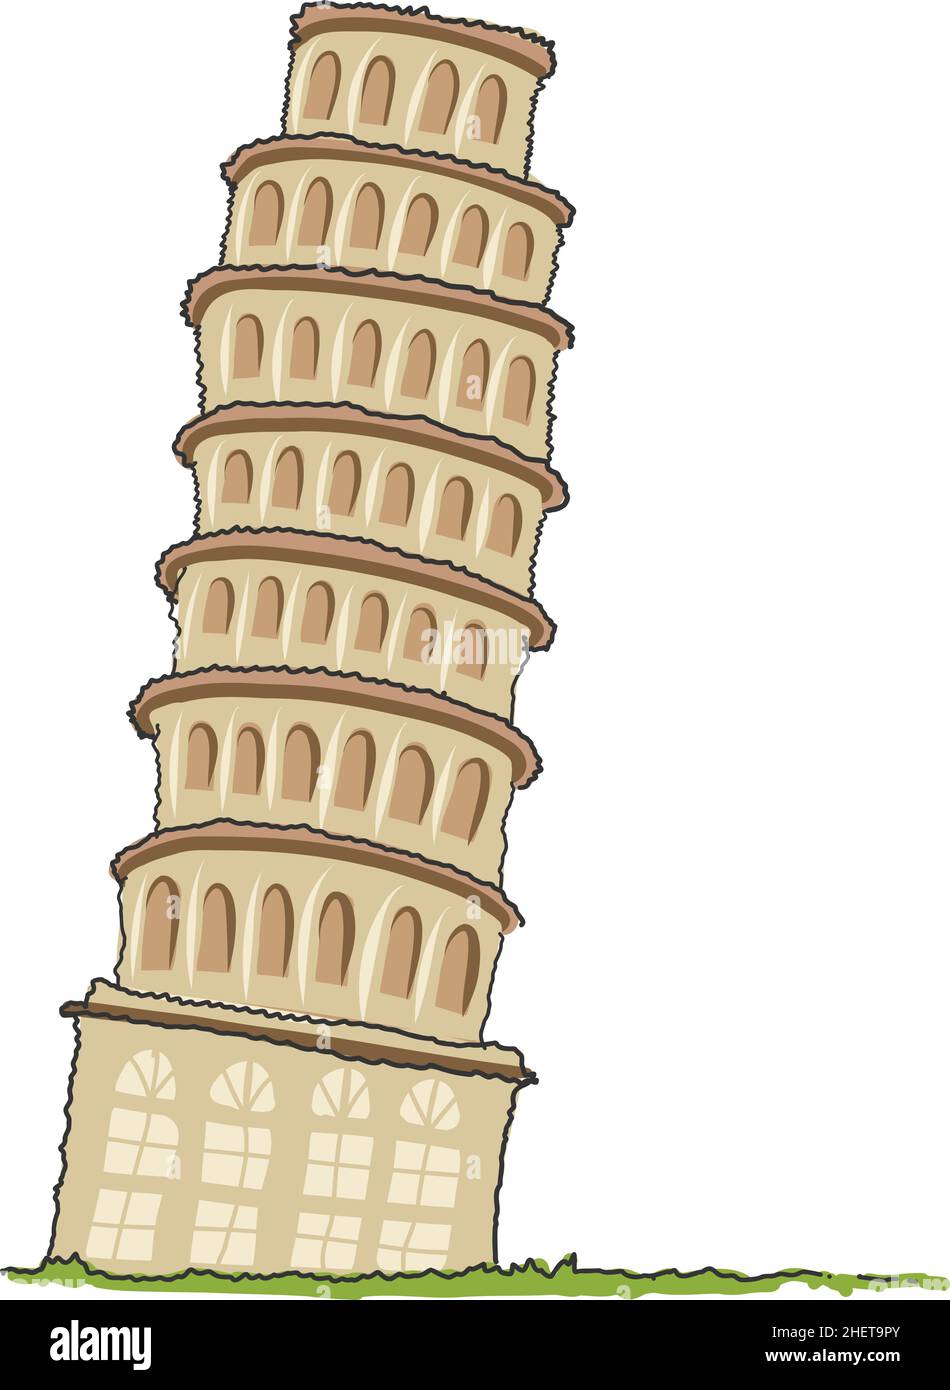 Pisa Tower Doodle Stil Vektor-Illustration isoliert kleine Landschaft mit schiefen Turm von Pisa, grüne Wiese. Berühmtes Wahrzeichen Italiens. Flache Vektordarstellung Stock Vektor